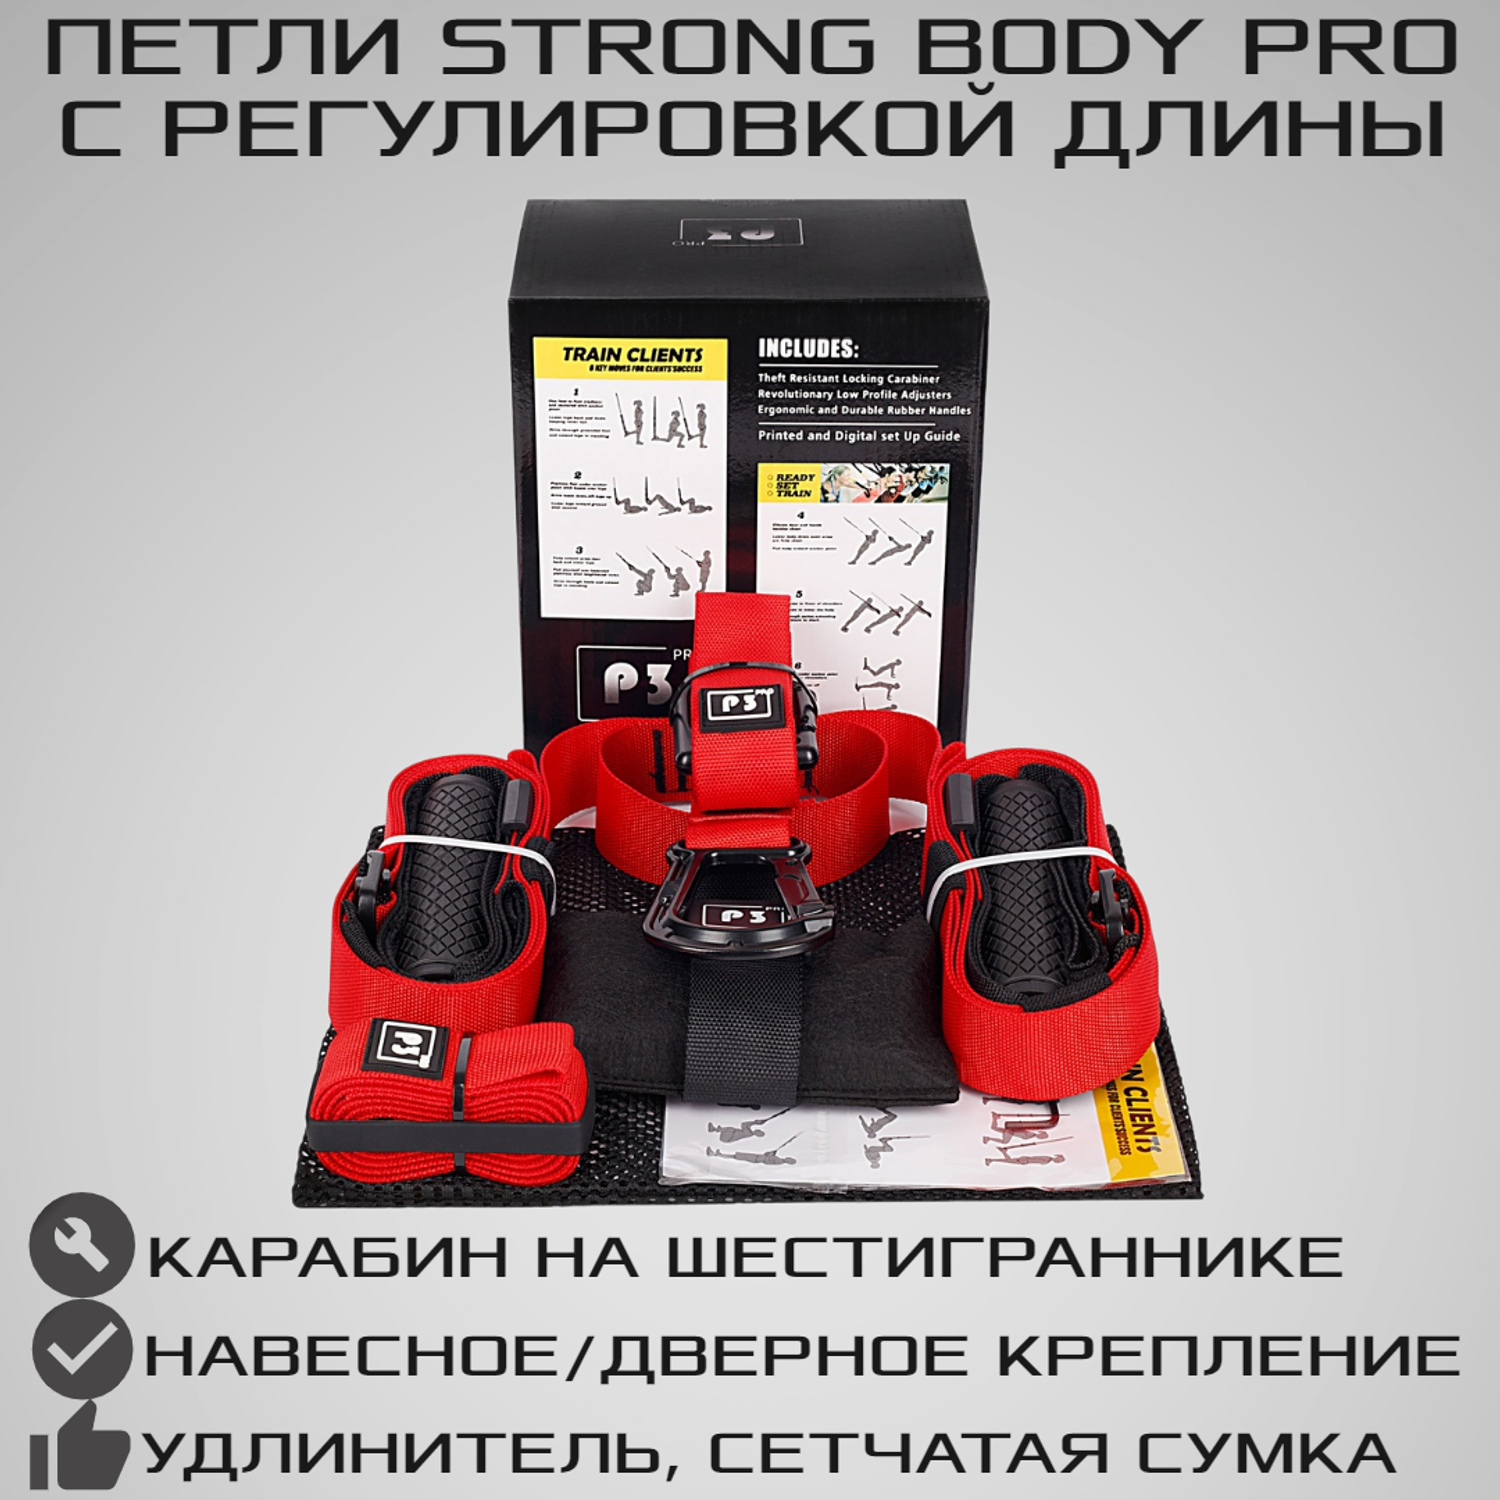 Тренировочные петли STRONG BODY P3 Pro черно-красные подвесные тренировочные петли для фитнеса - фото 1